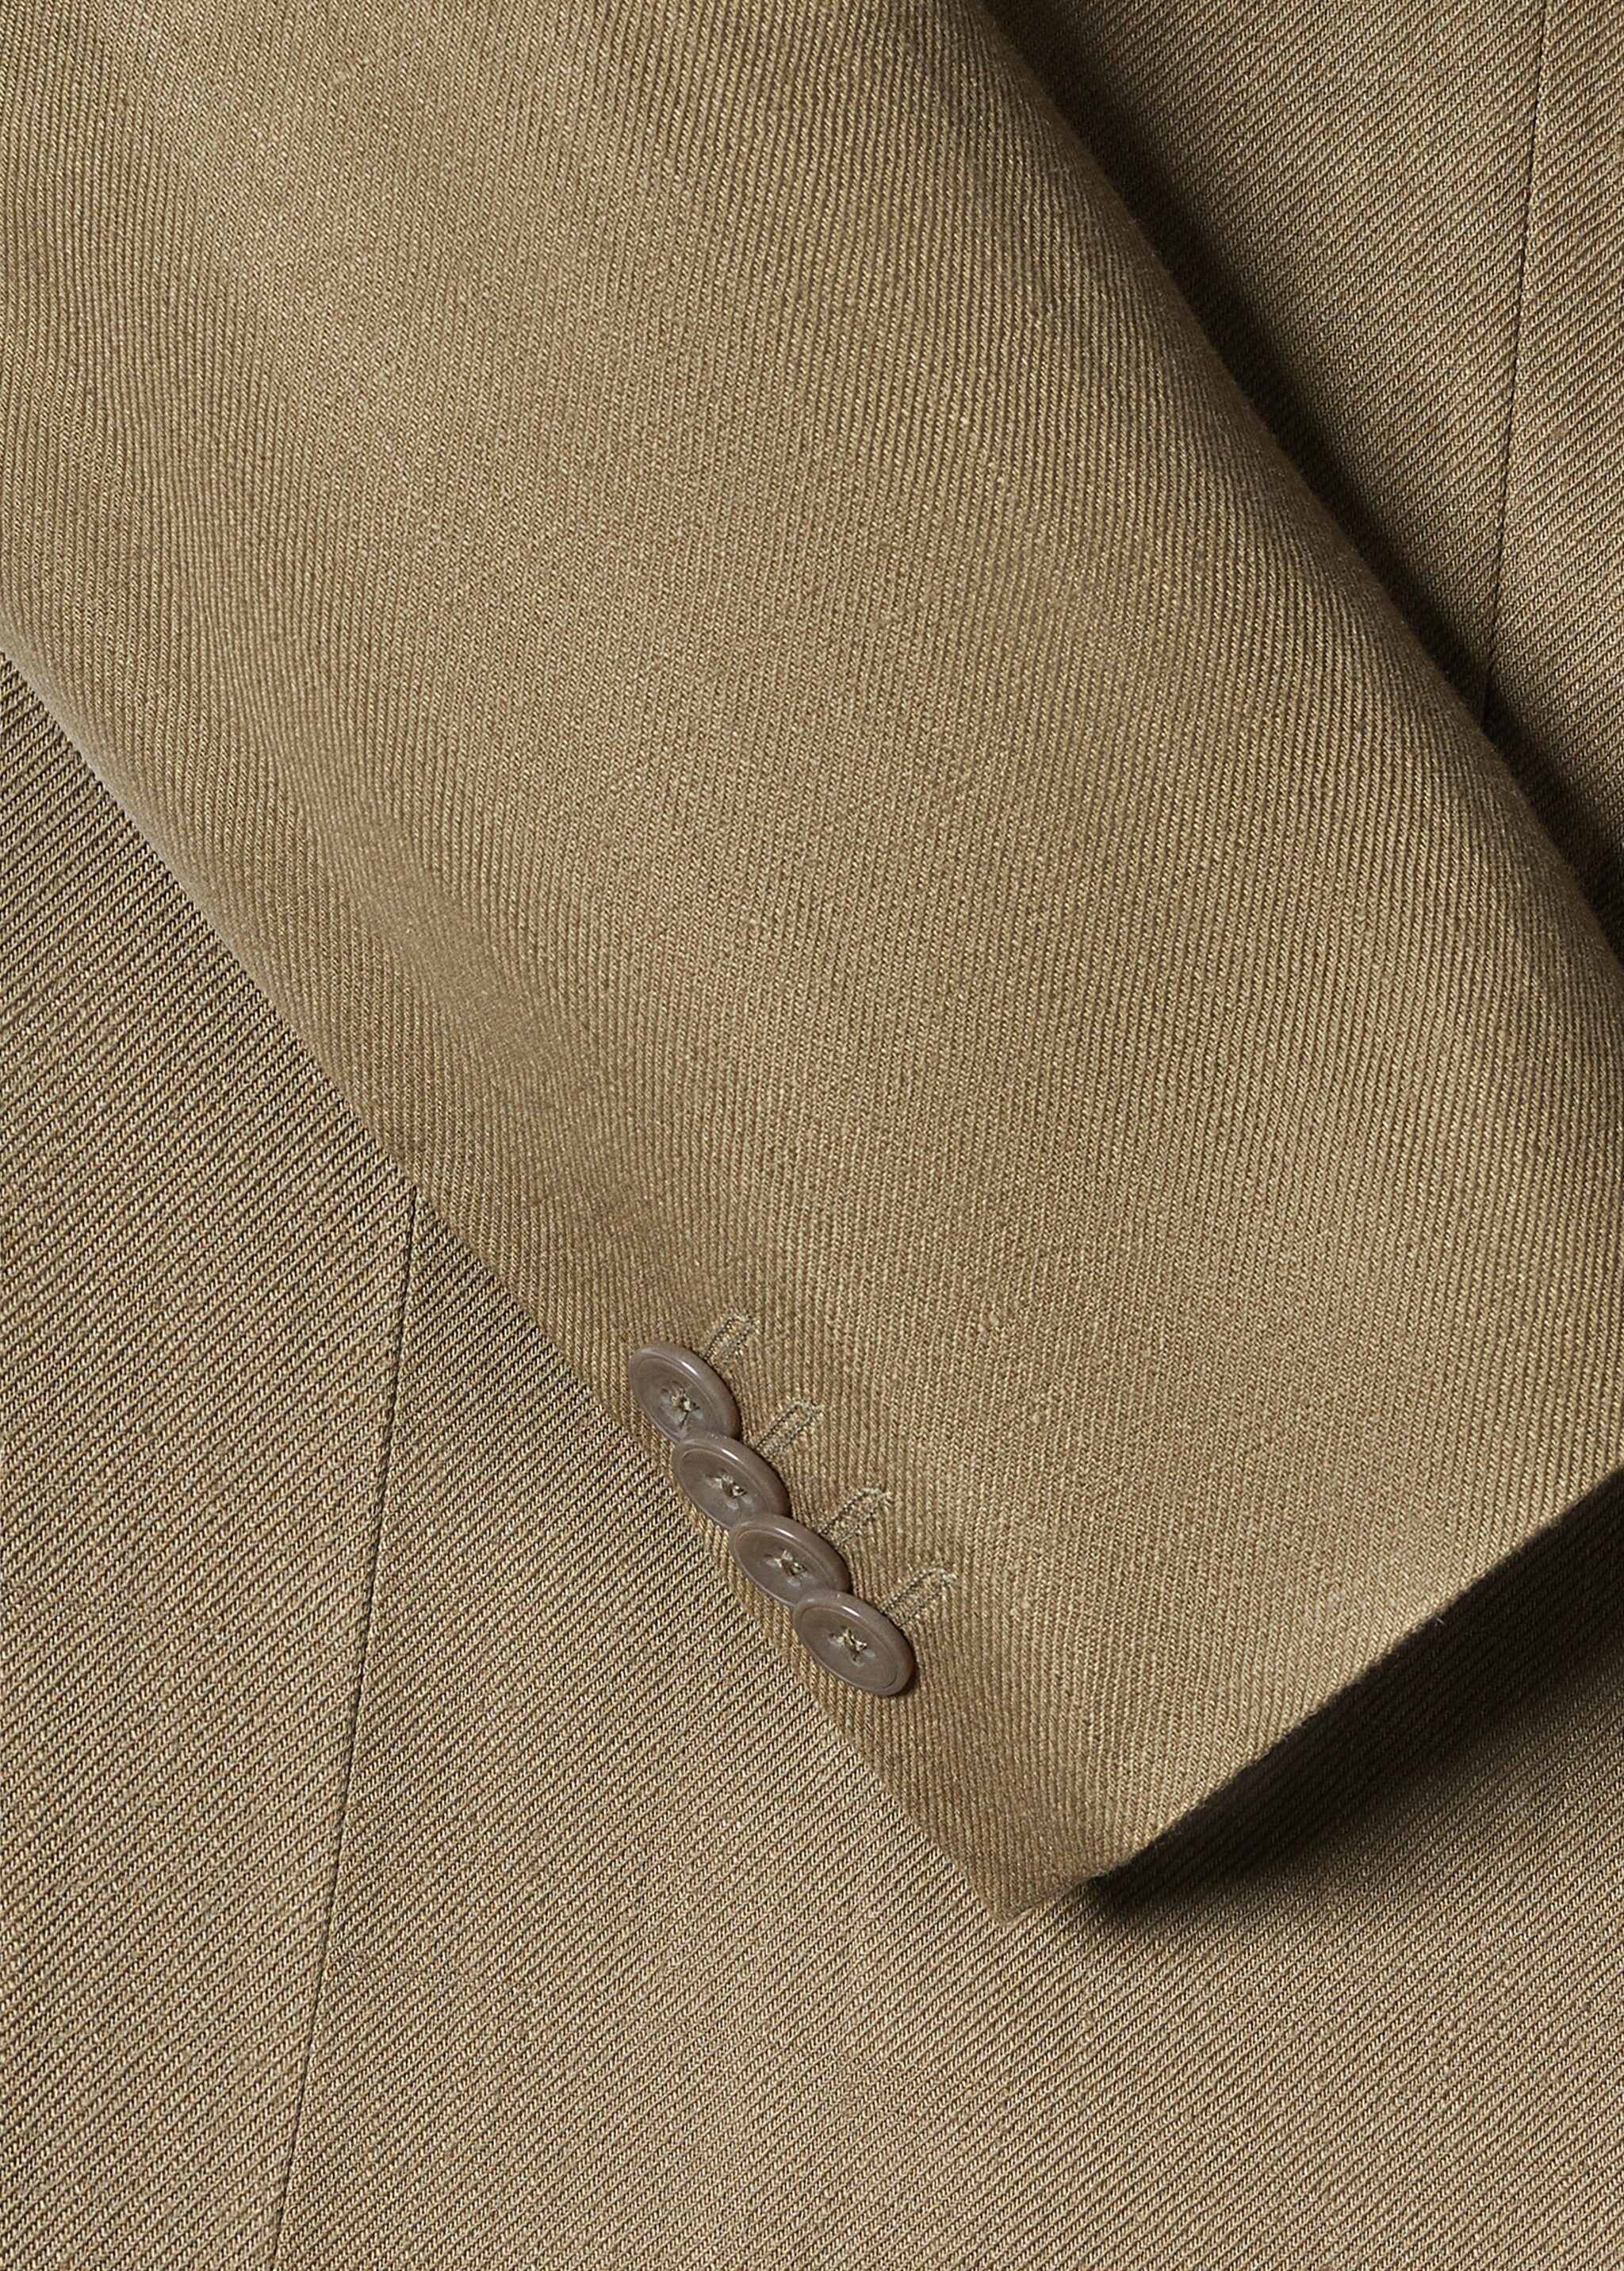 Blazer suit 100% linen - Details of the article 8